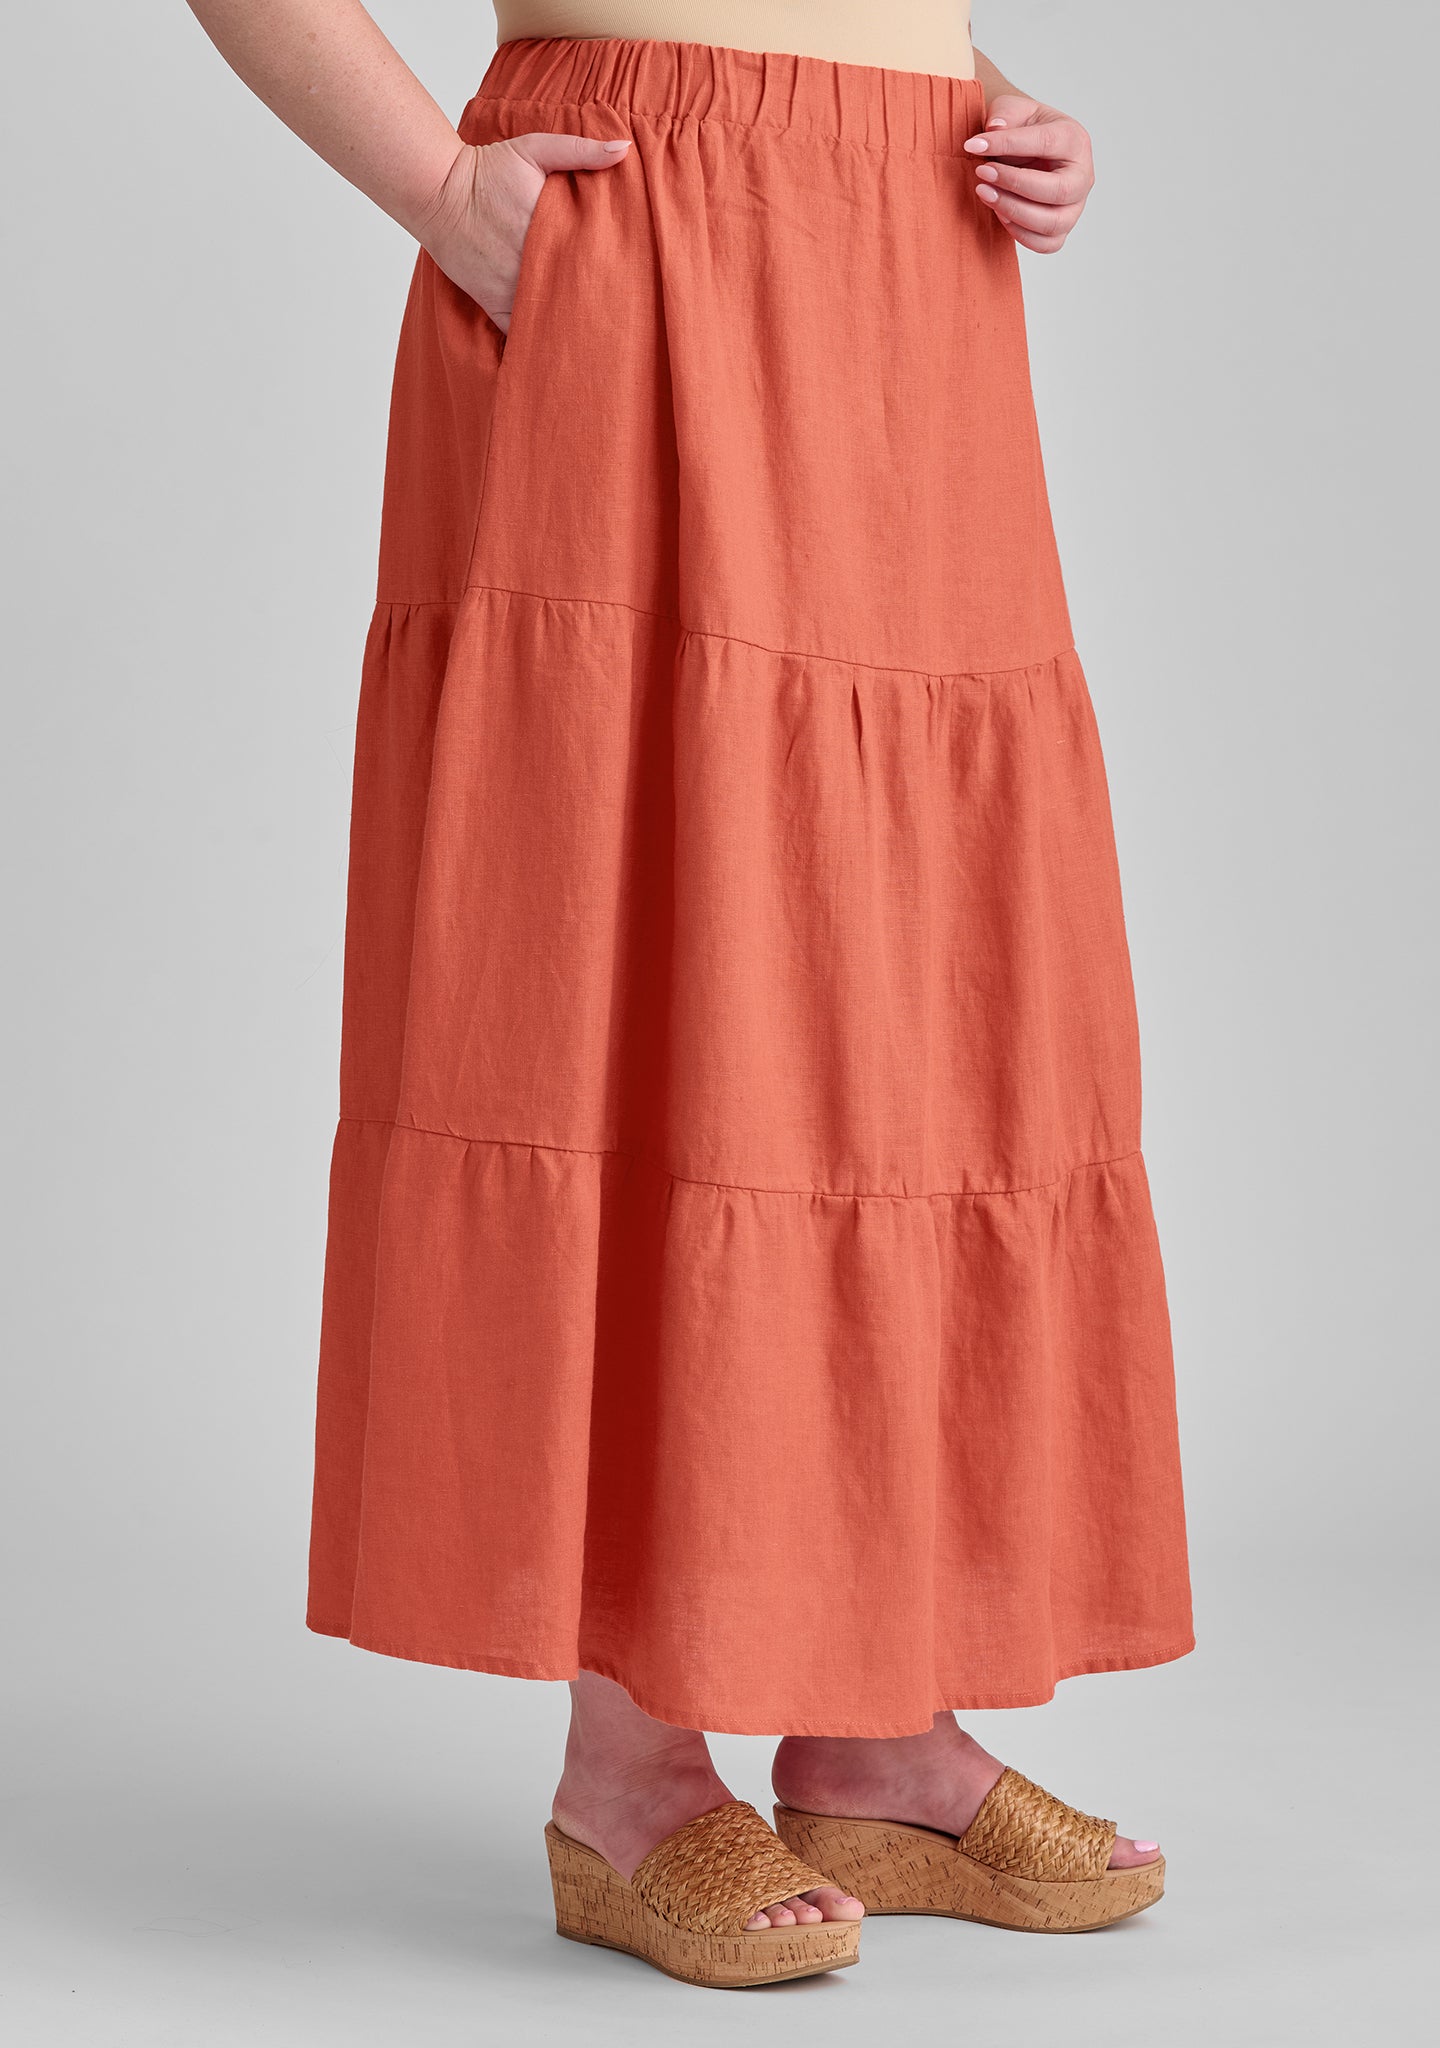 gaia skirt linen maxi skirt details